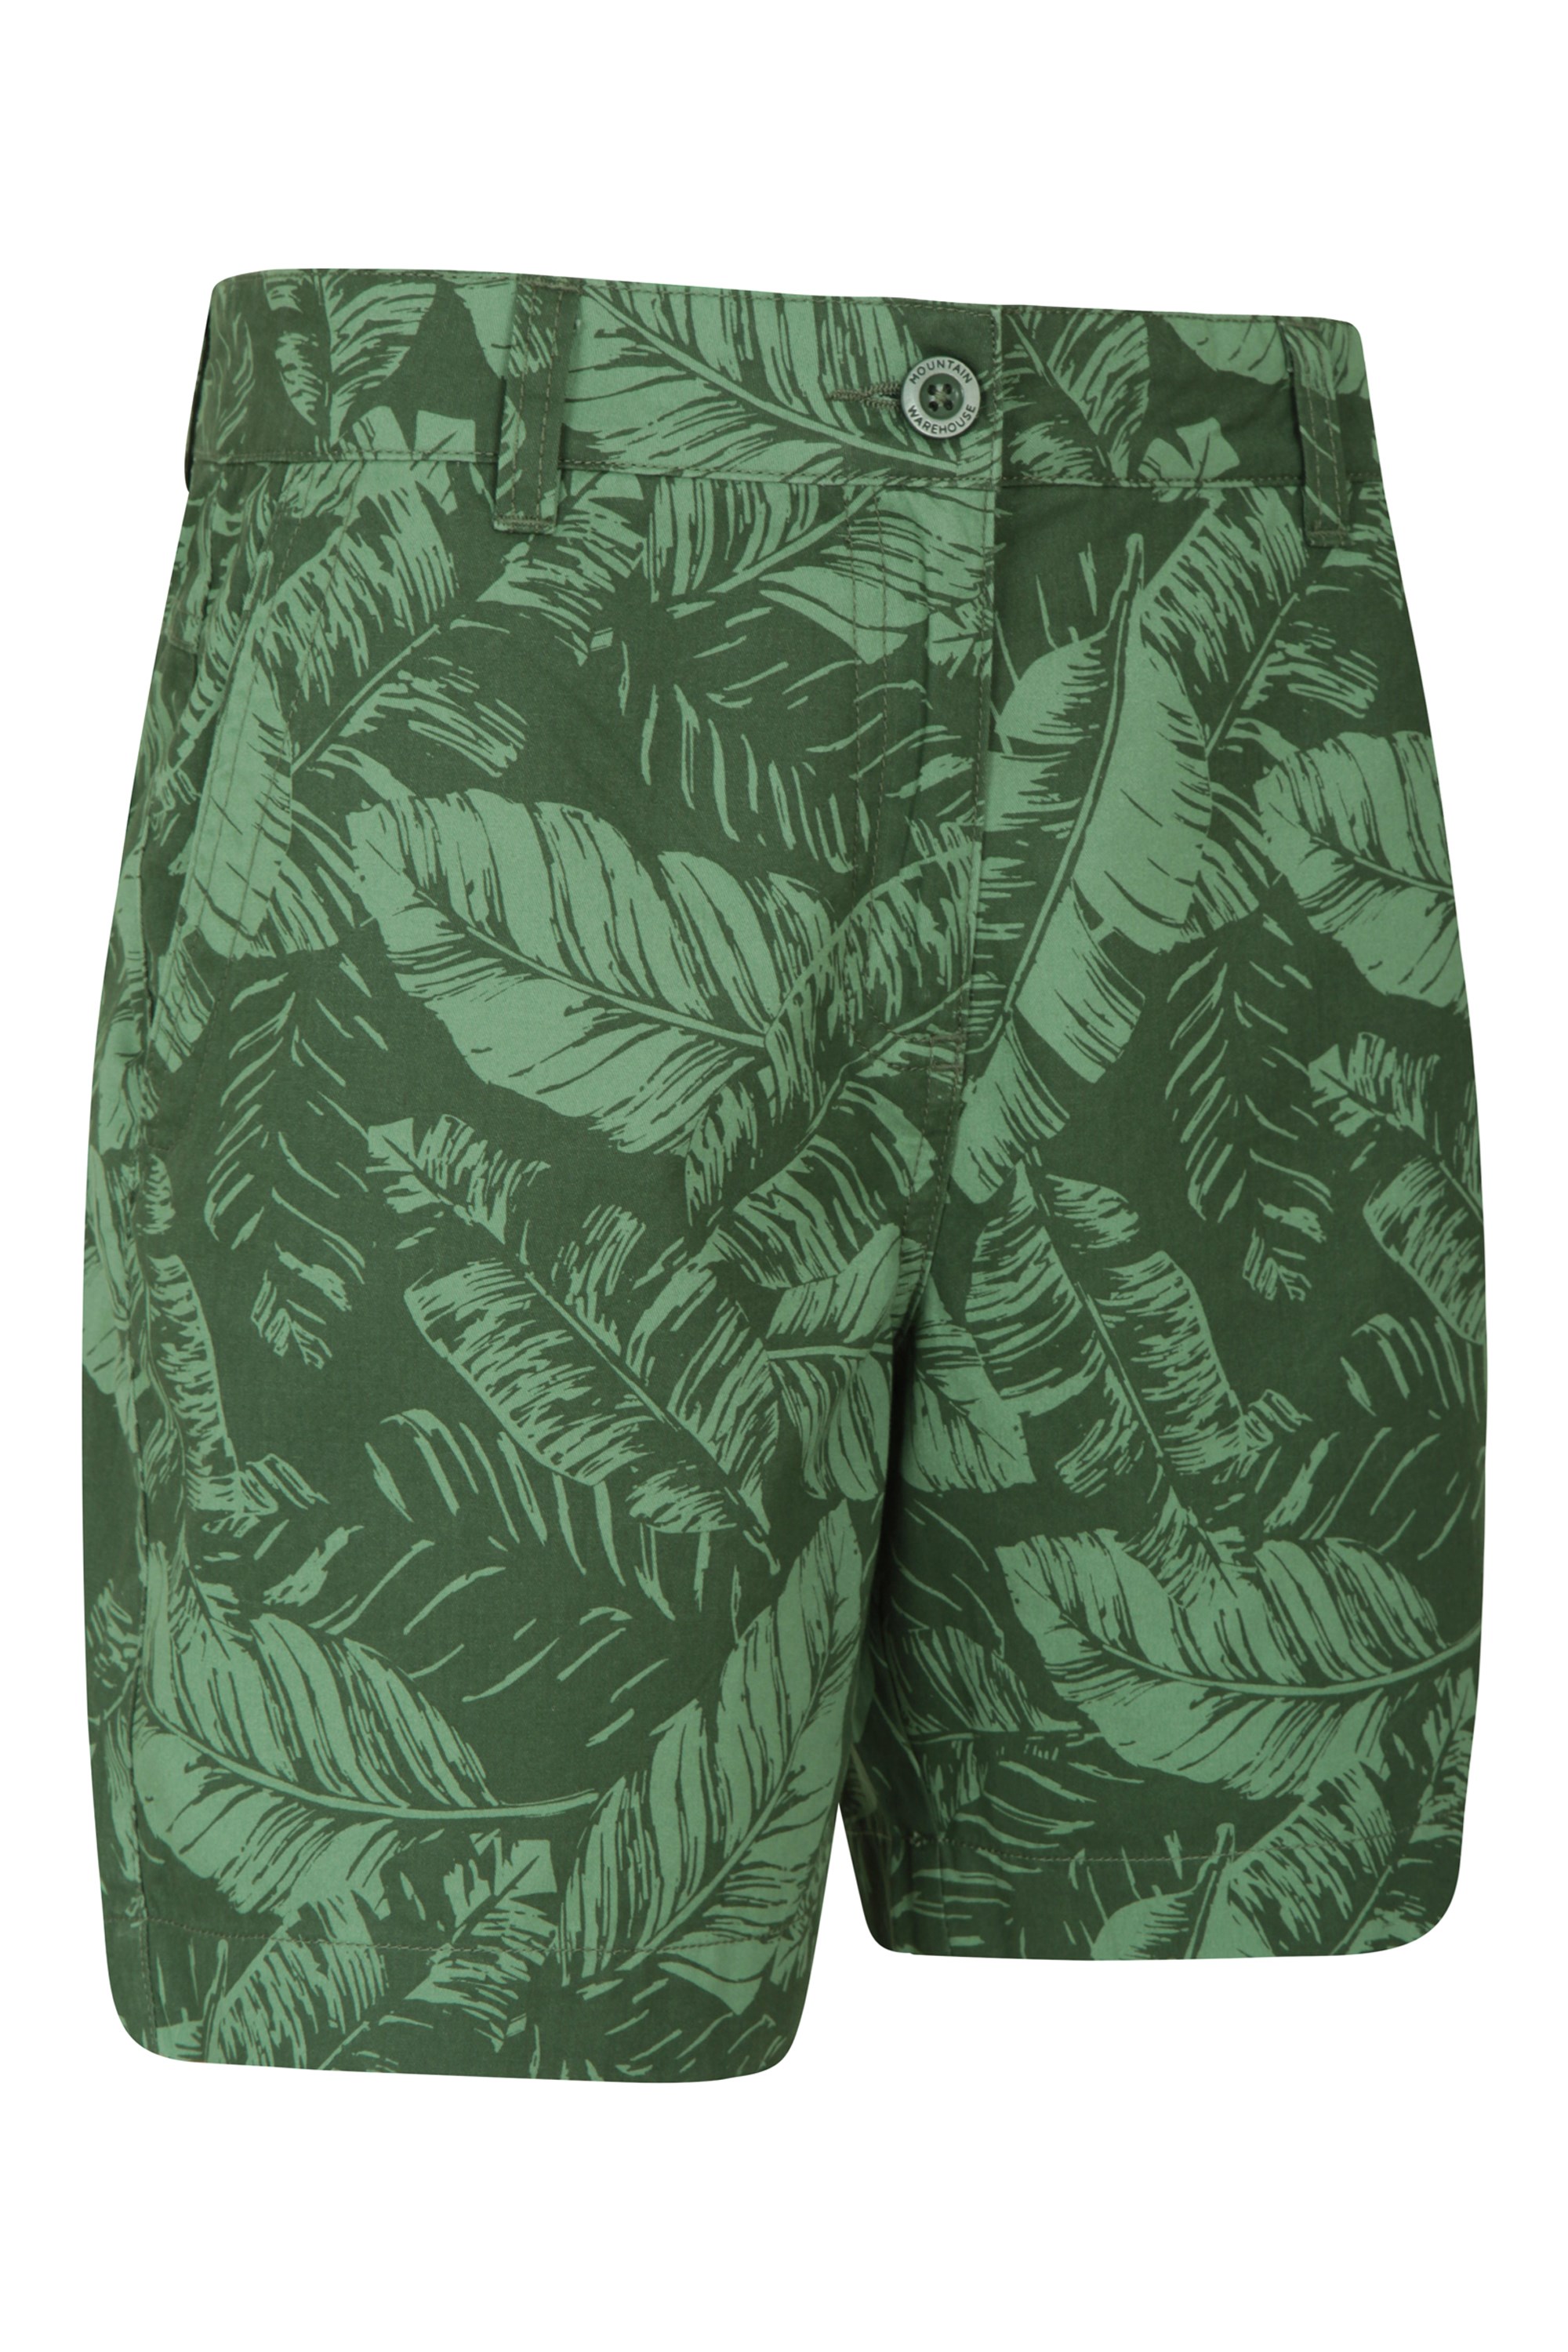 Mountain Warehouse Lakeside II Pantalones Cortos para Mujer pícnics duraderos de algodón Ligeros de Verano para la Playa 